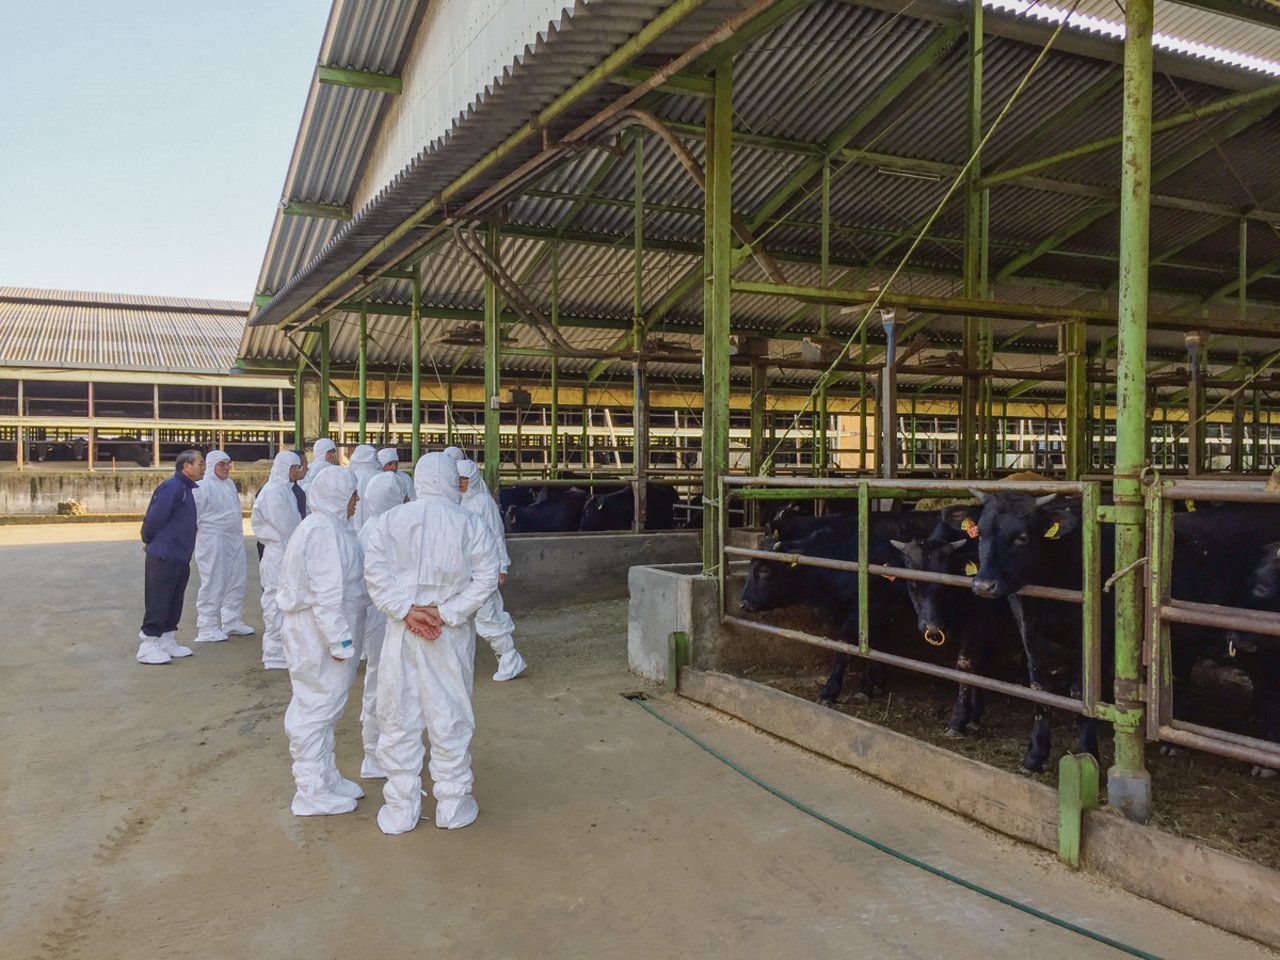 Besichtigung der Hitachiwagyu-Farm mit 1700 Rindern. Die Tiere werden nach 30 Monaten für rund 15 500 Franken verkauft.